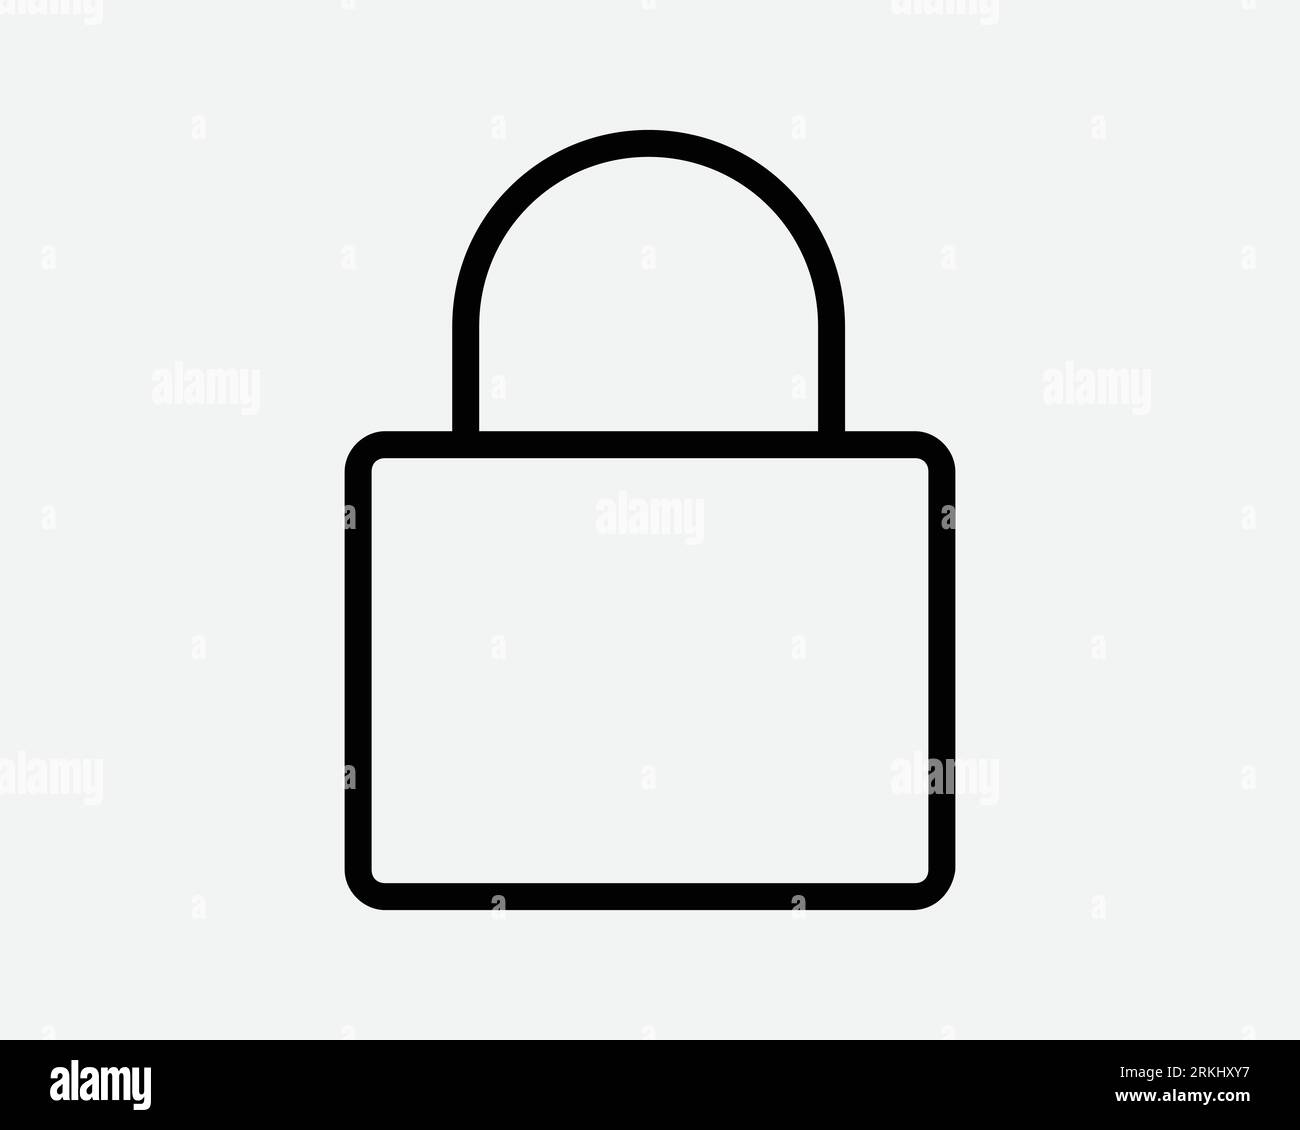 Icona della linea di blocco sicurezza sicurezza sicurezza accesso lucchetto privacy protezione riservata protezione negata blocco codice privato simbolo sottile nero segno vettore Illustrazione Vettoriale